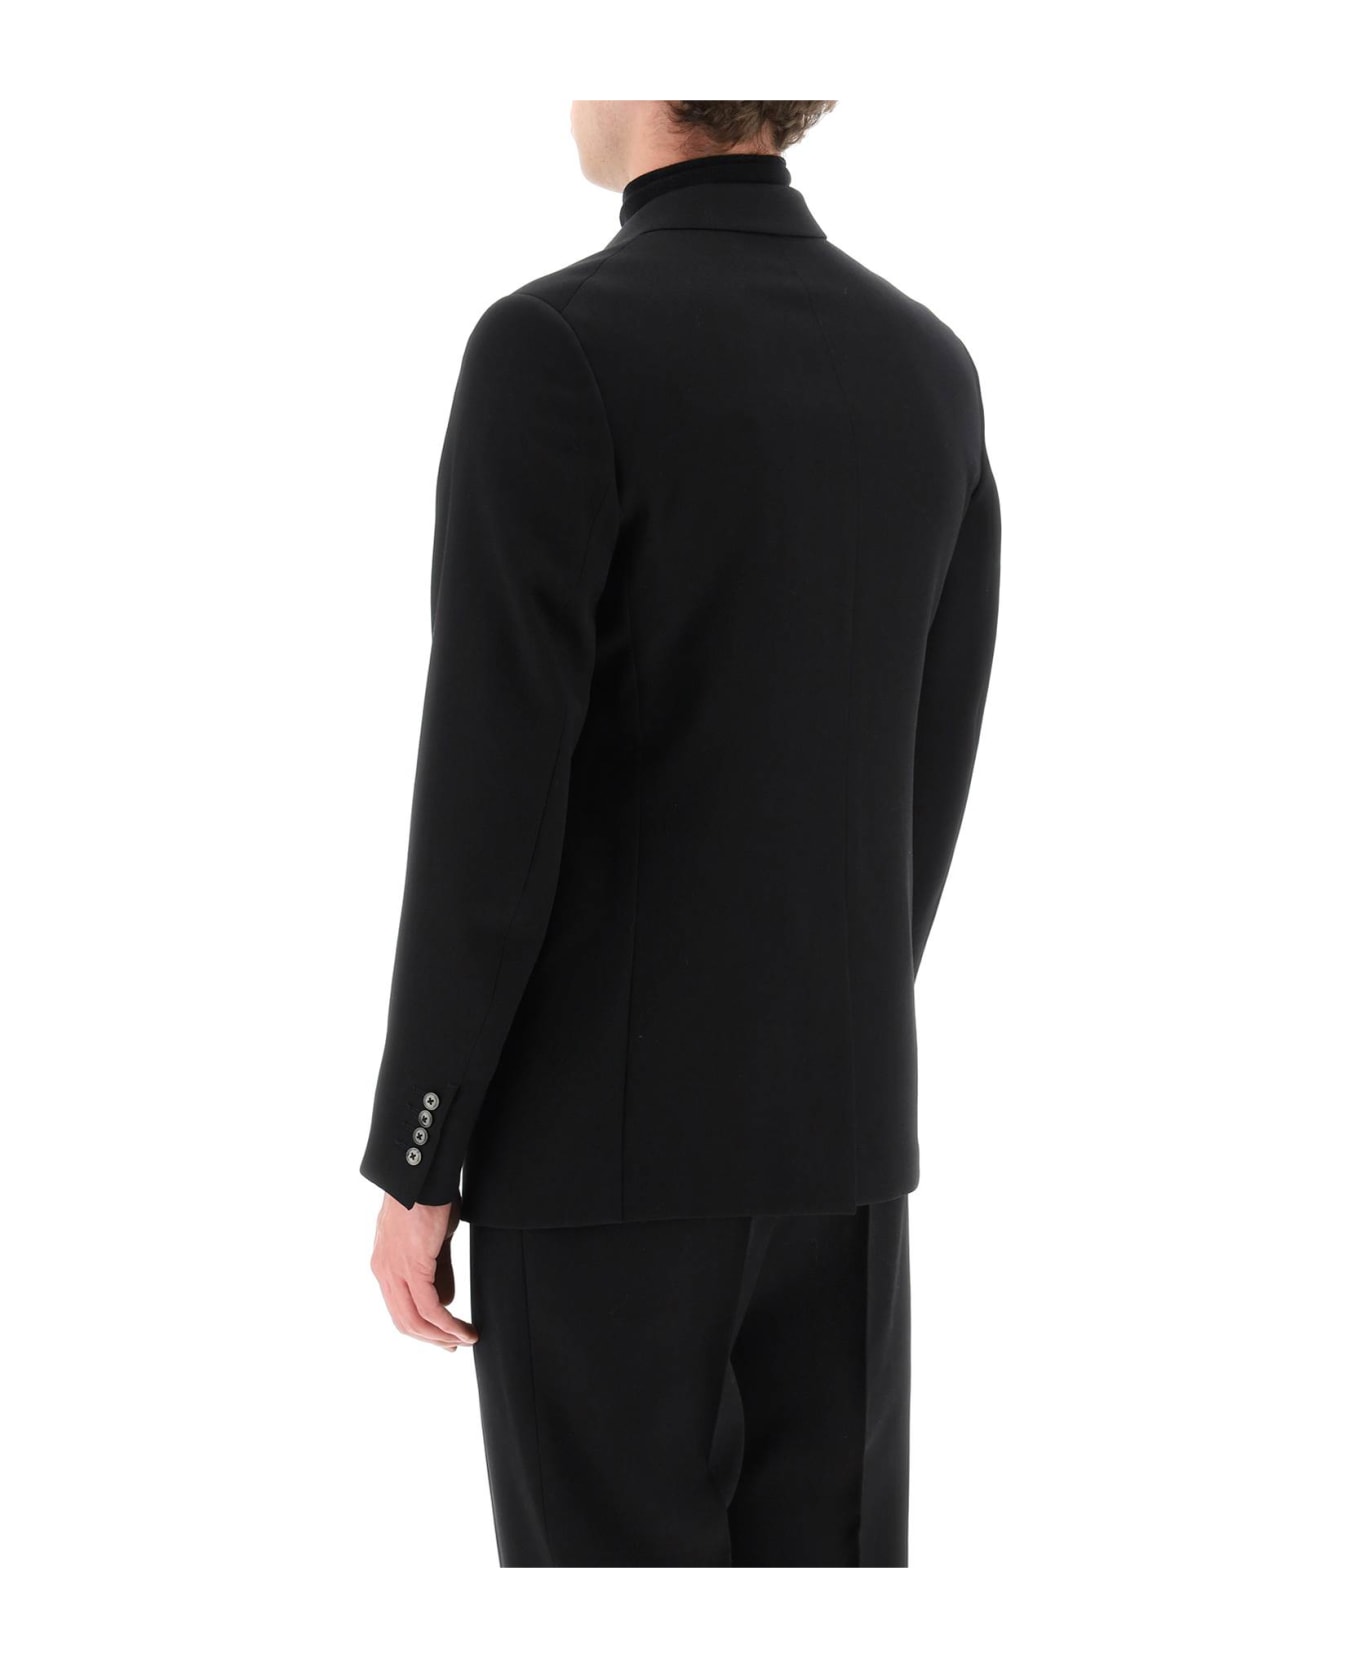 Lanvin Wool Single Breast Blazer Jacket - BLACK (Black) ブレザー